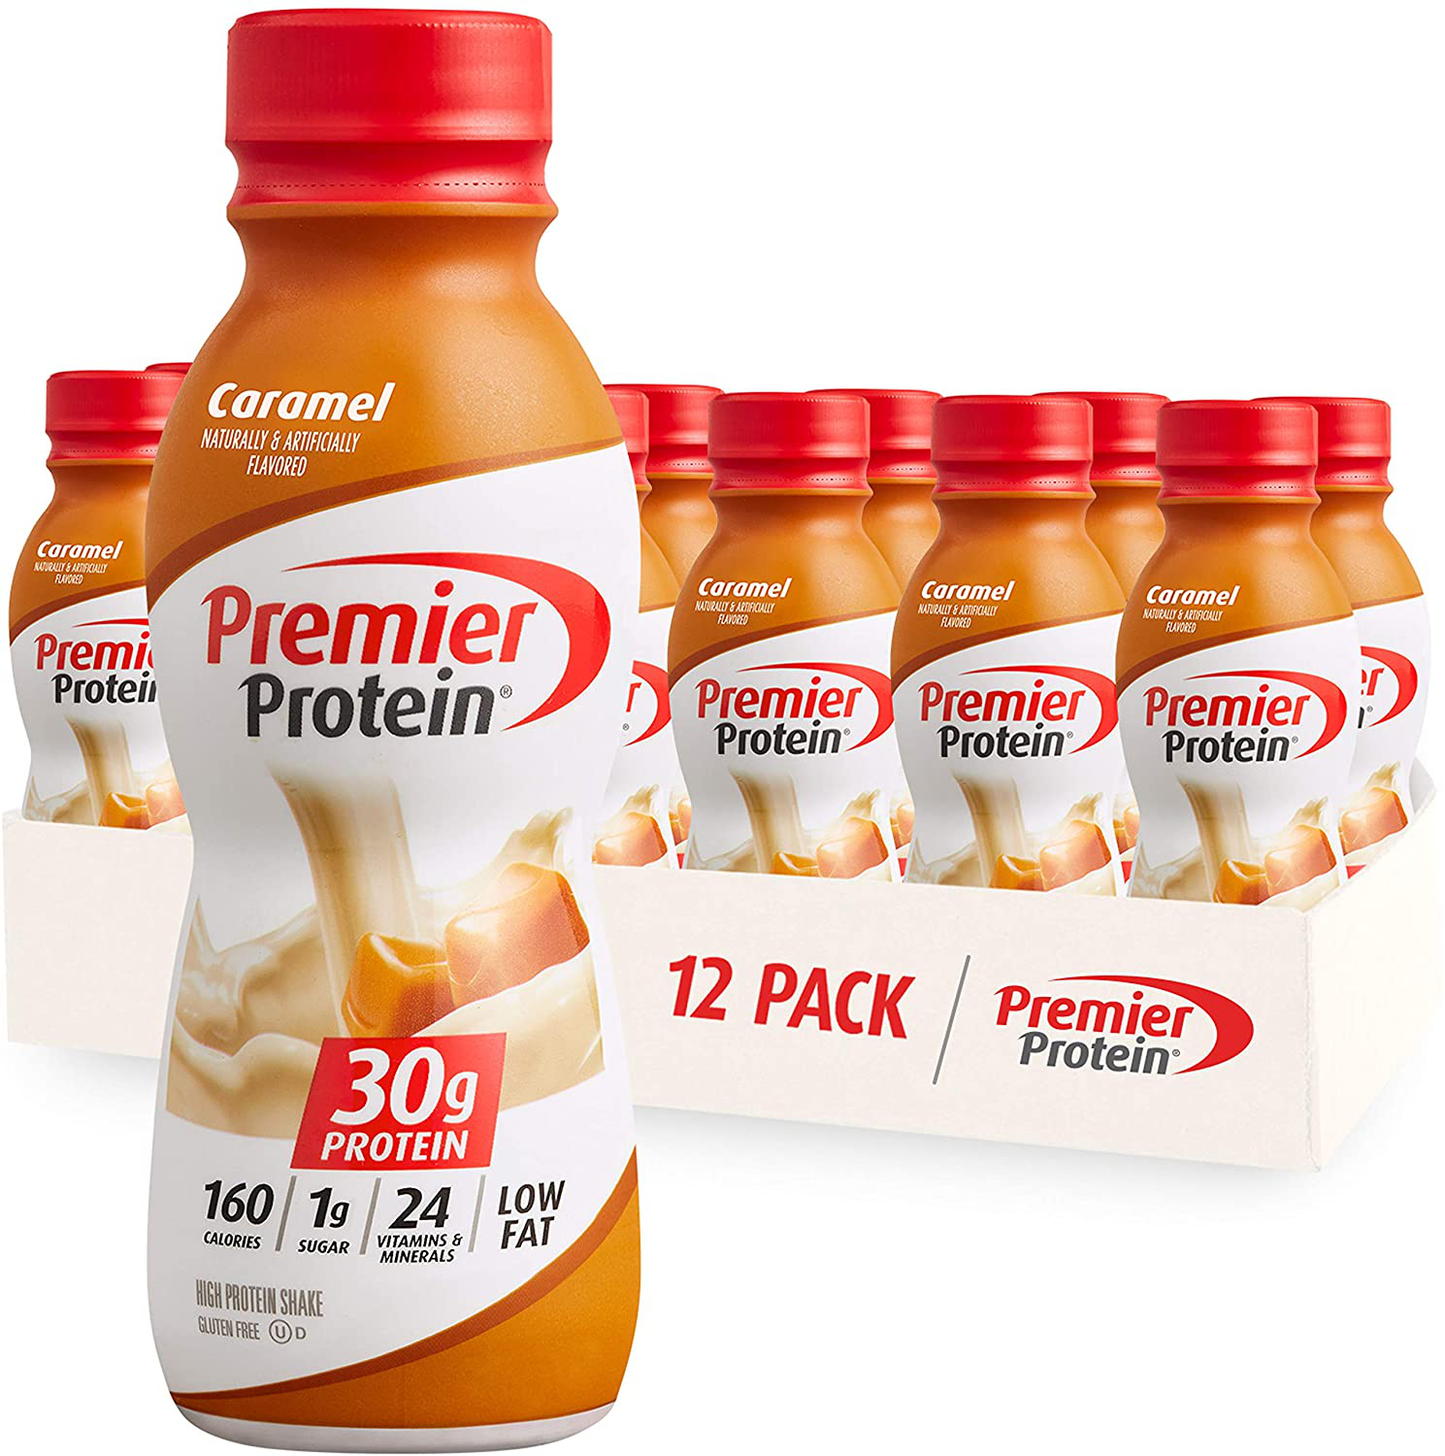 Premier Protein Shake 30g Protein, 1g Sugar, 24 Vitamins & Minerals, Nutrients to Support Immune Health, 12 Pack, 138.0 Fl Oz